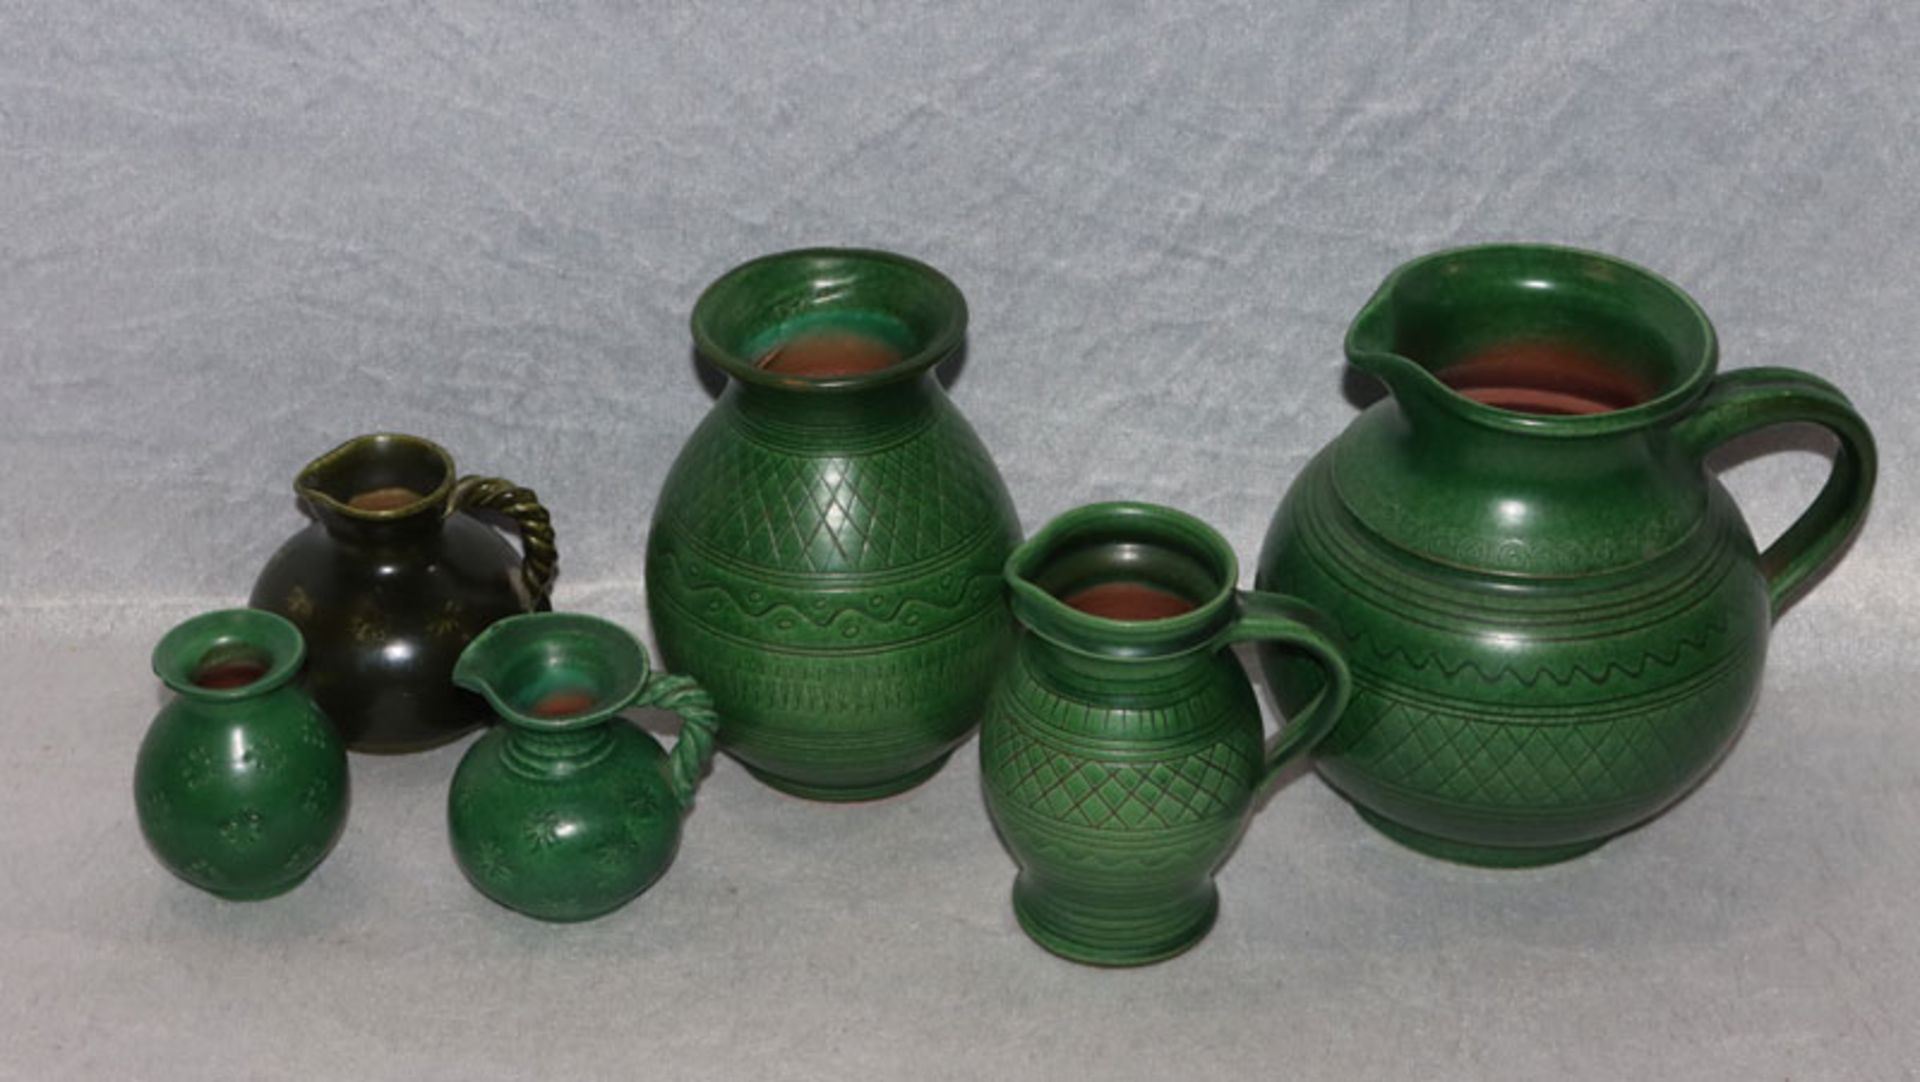 Konvolut von Kagel Keramik, grün glasiert, 4 Henkelkrüge und 2 Vasen in verschiedenen Größen, H 7/15